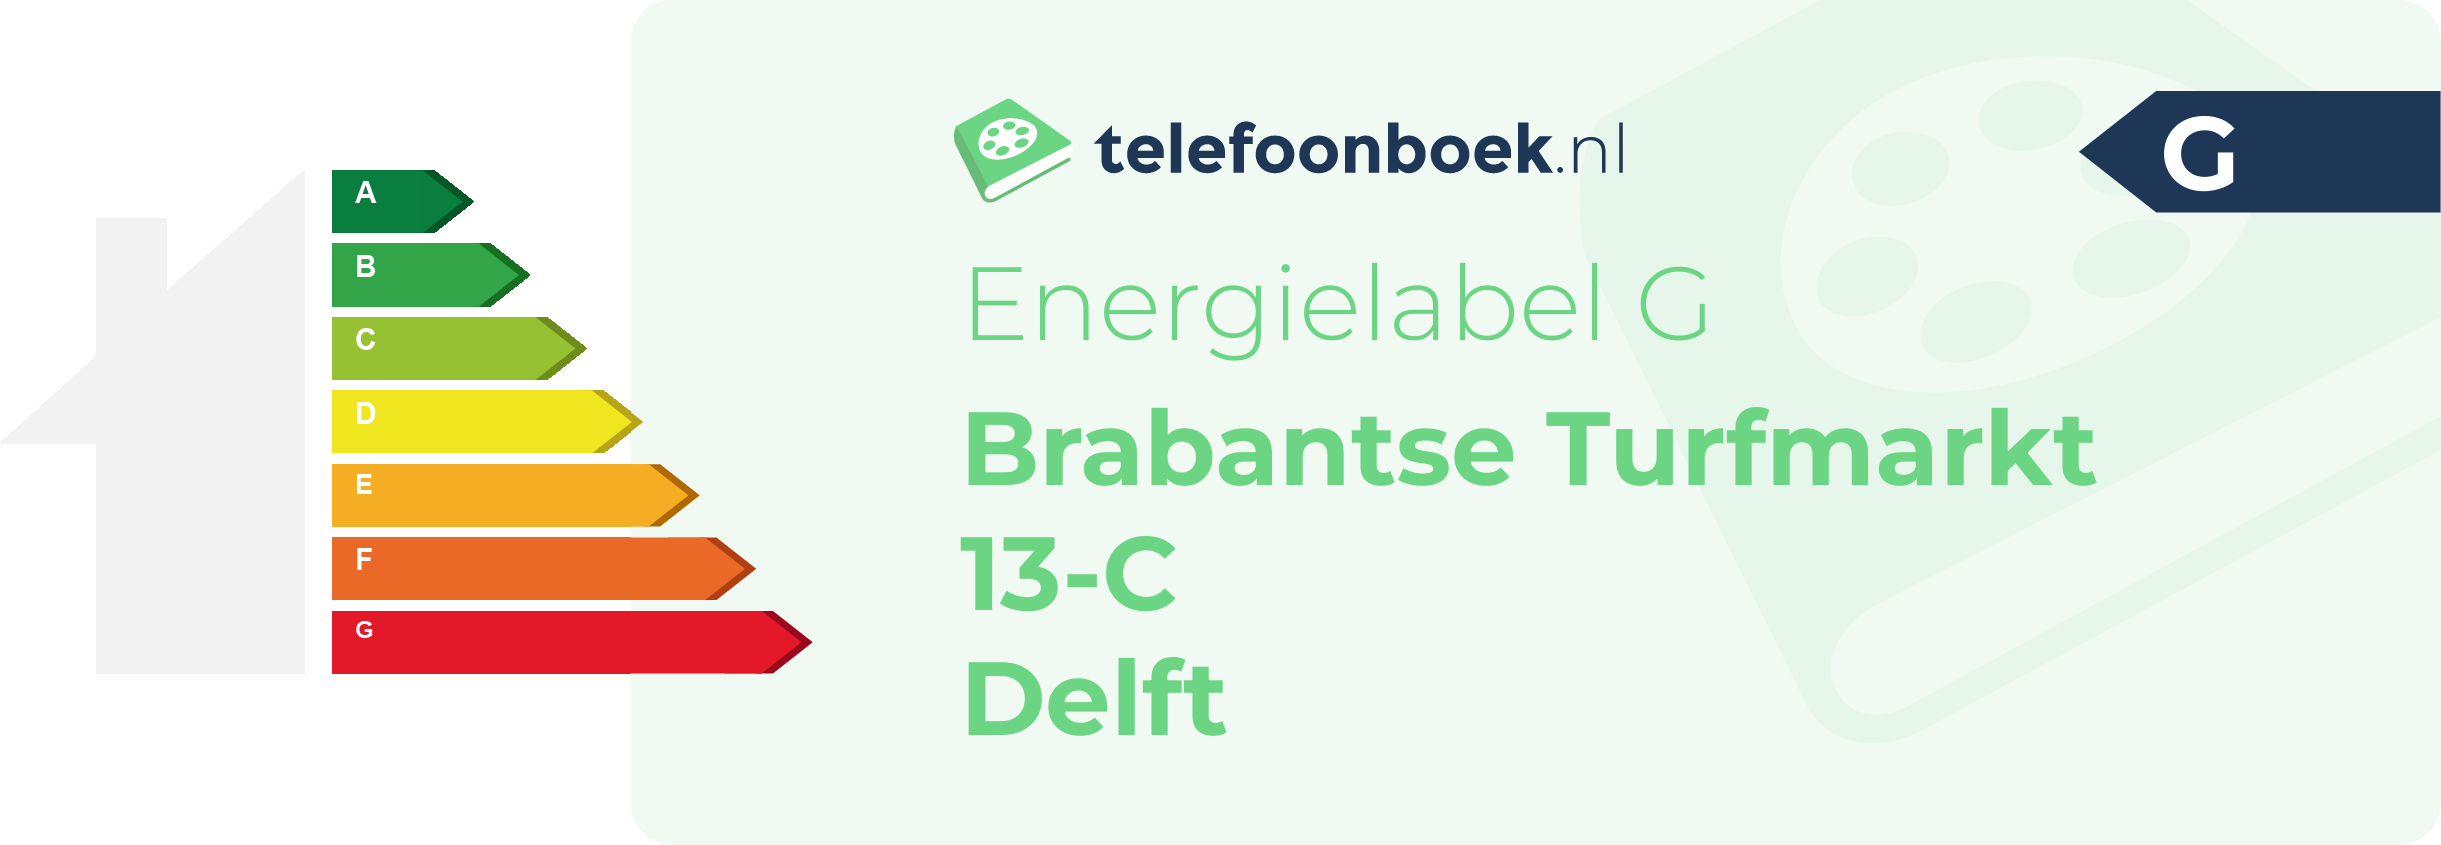 Energielabel Brabantse Turfmarkt 13-C Delft